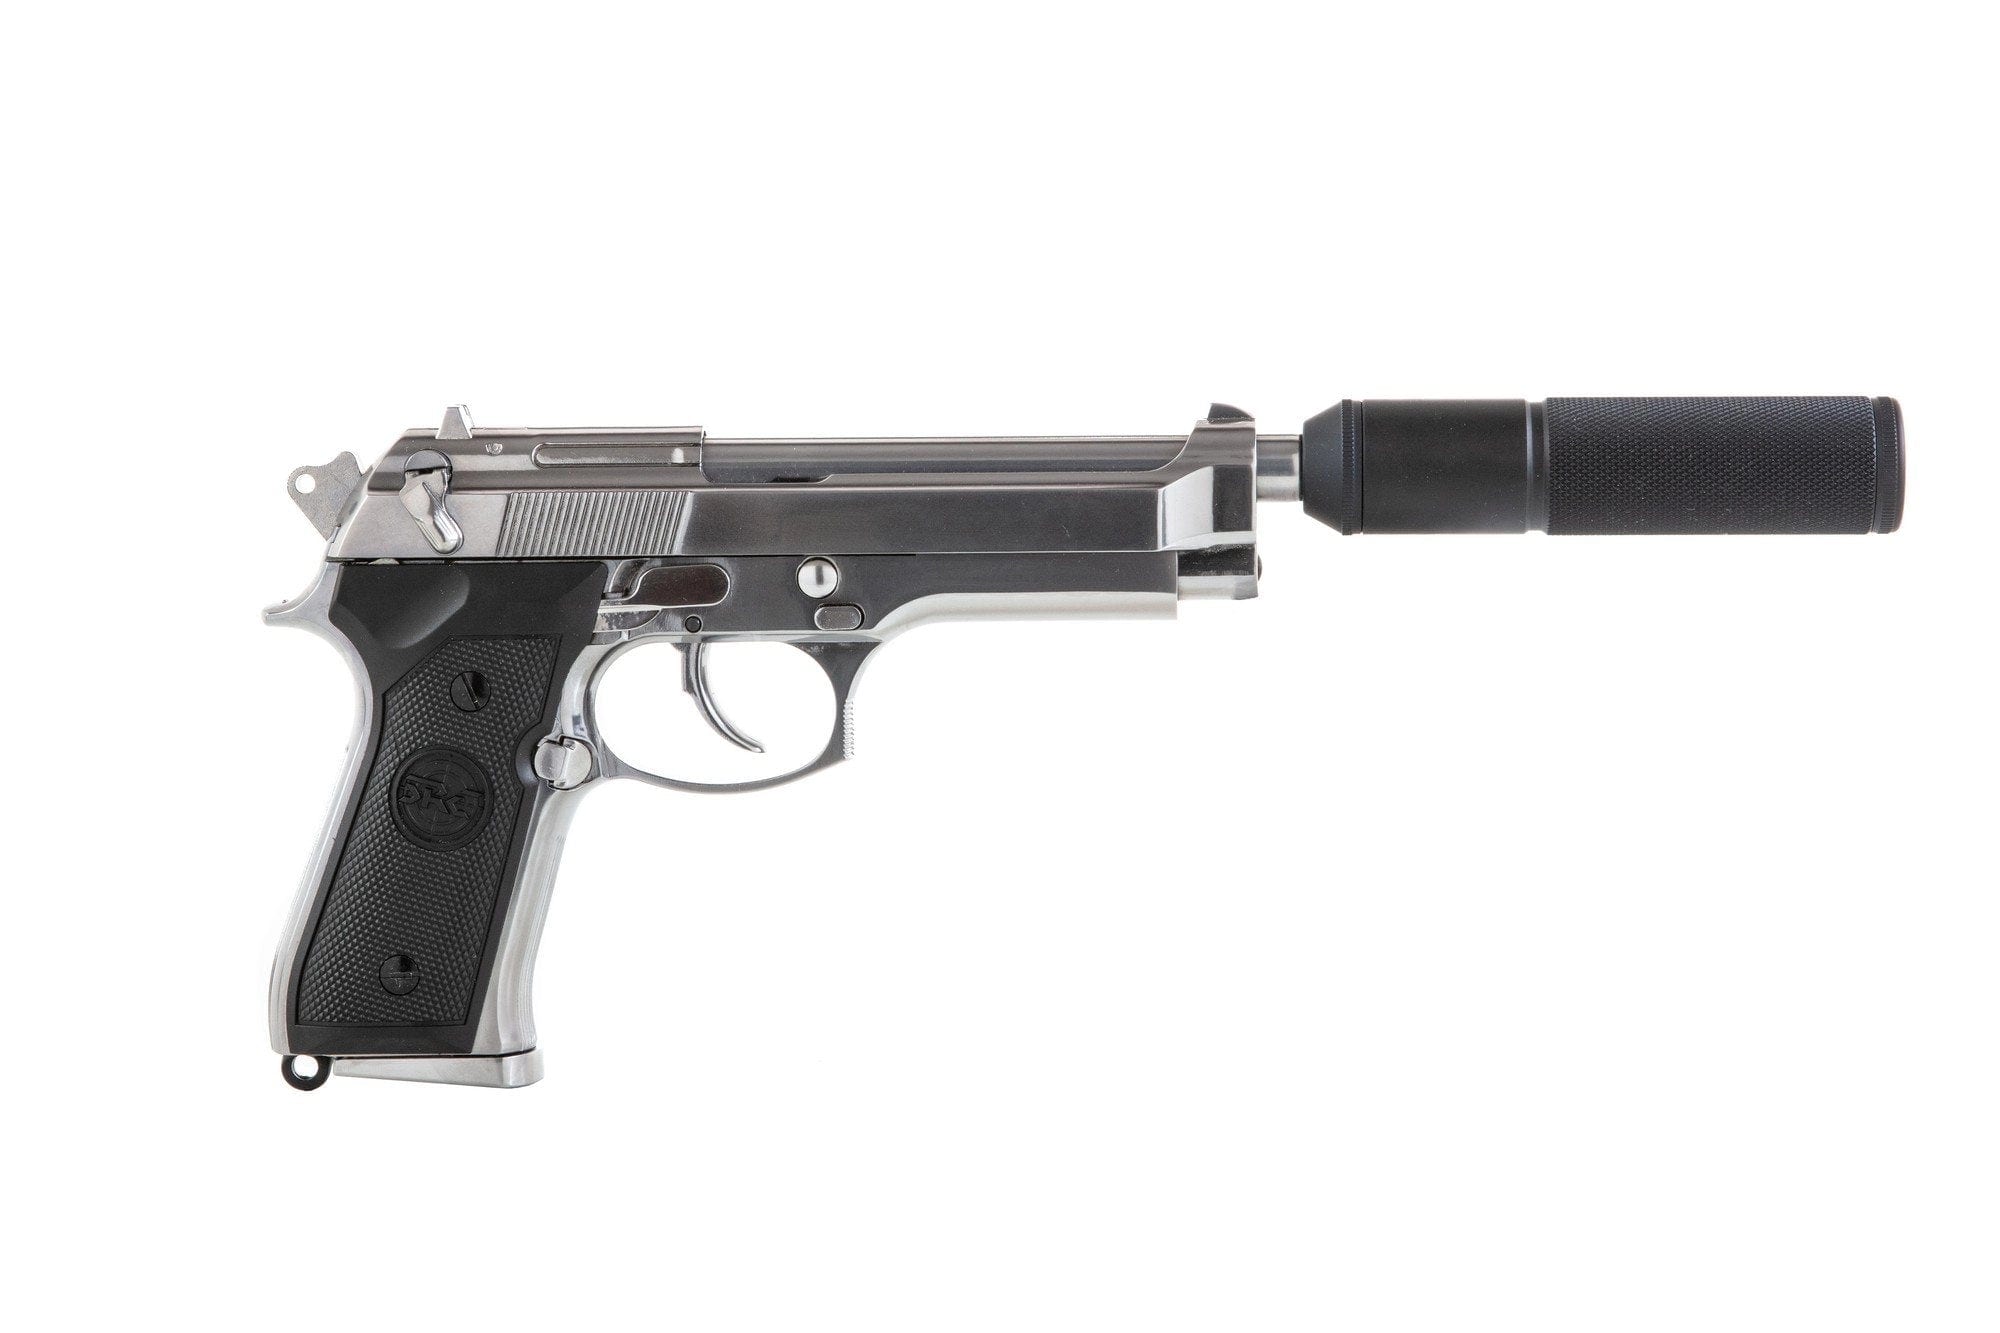 SR92 Pistolenreplik mit Schalldämpfer - silber